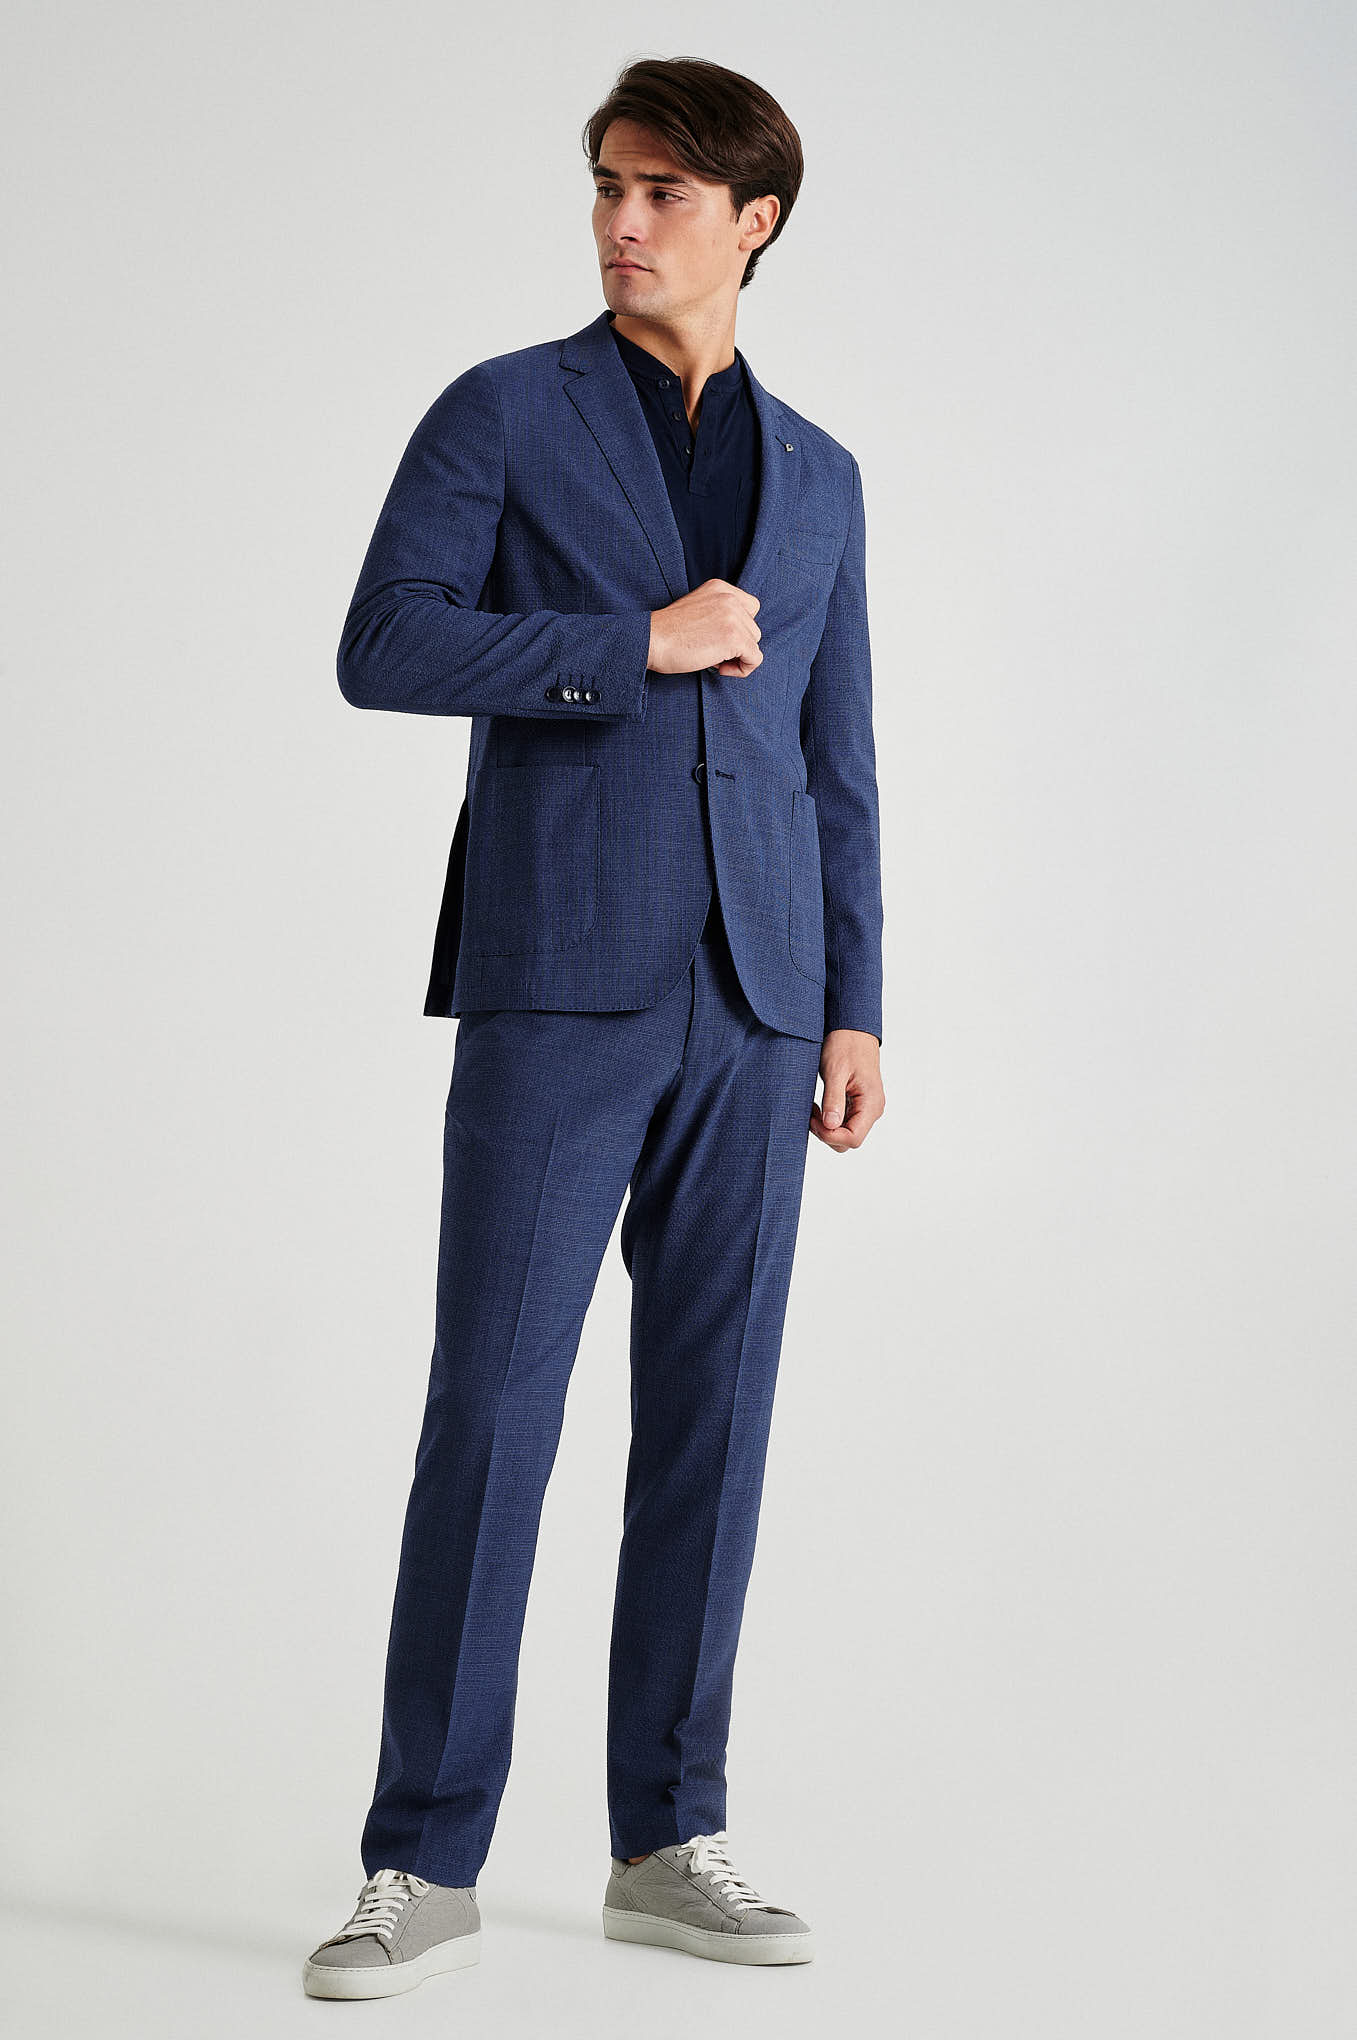 Suit Blue Formal Man